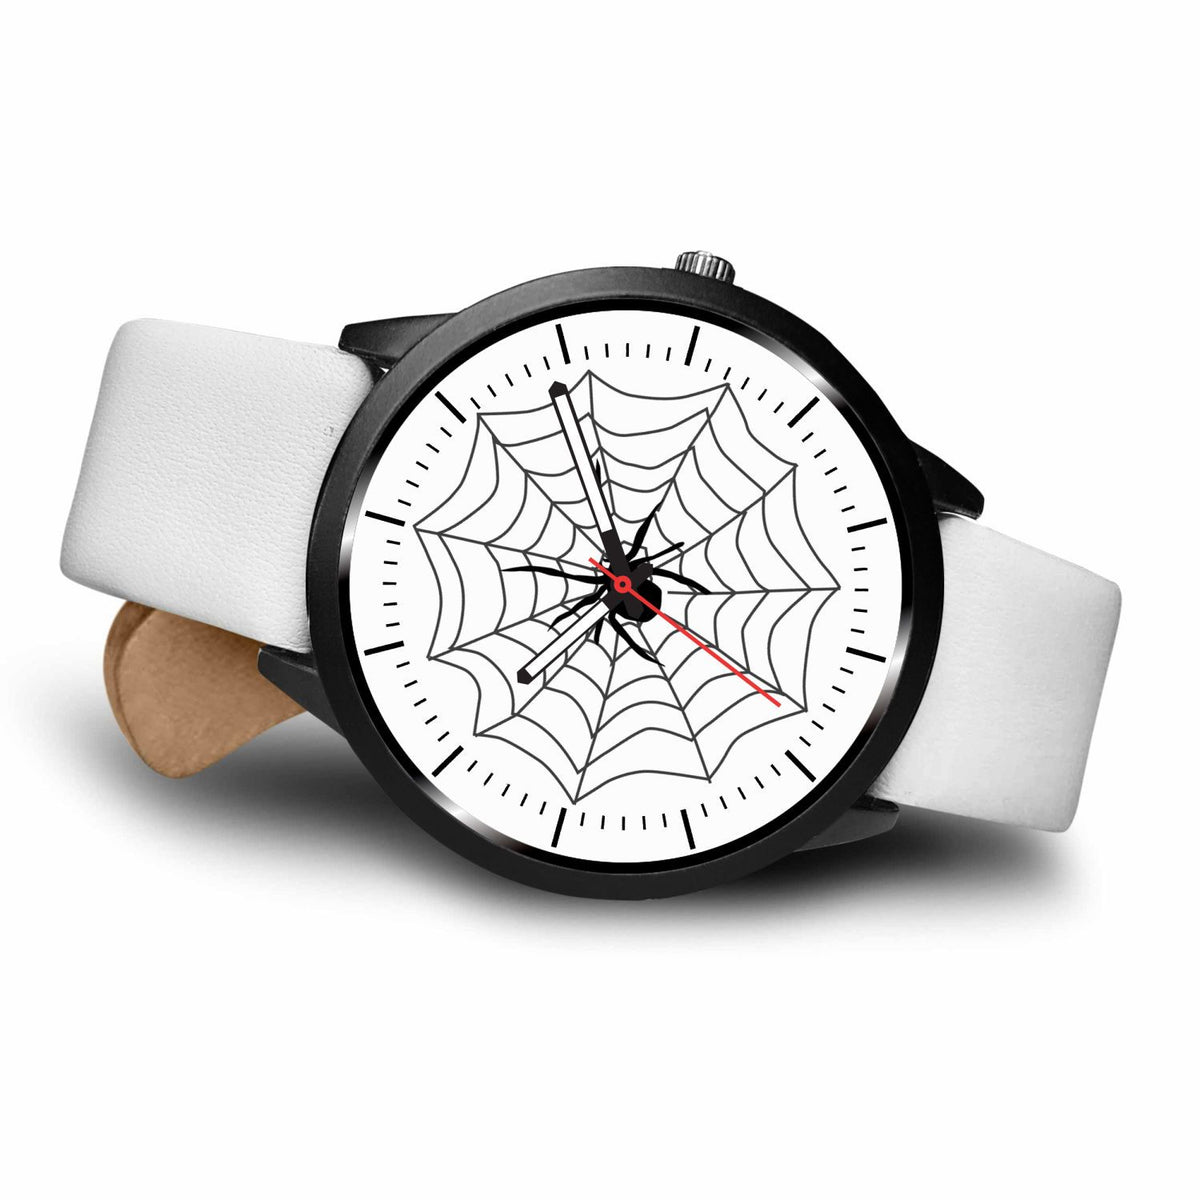 Секундные наручные часы. Часы с паучком. Часы паук. Часы наручные с пауком. Наручные часы с пауком на секундной стрелке.